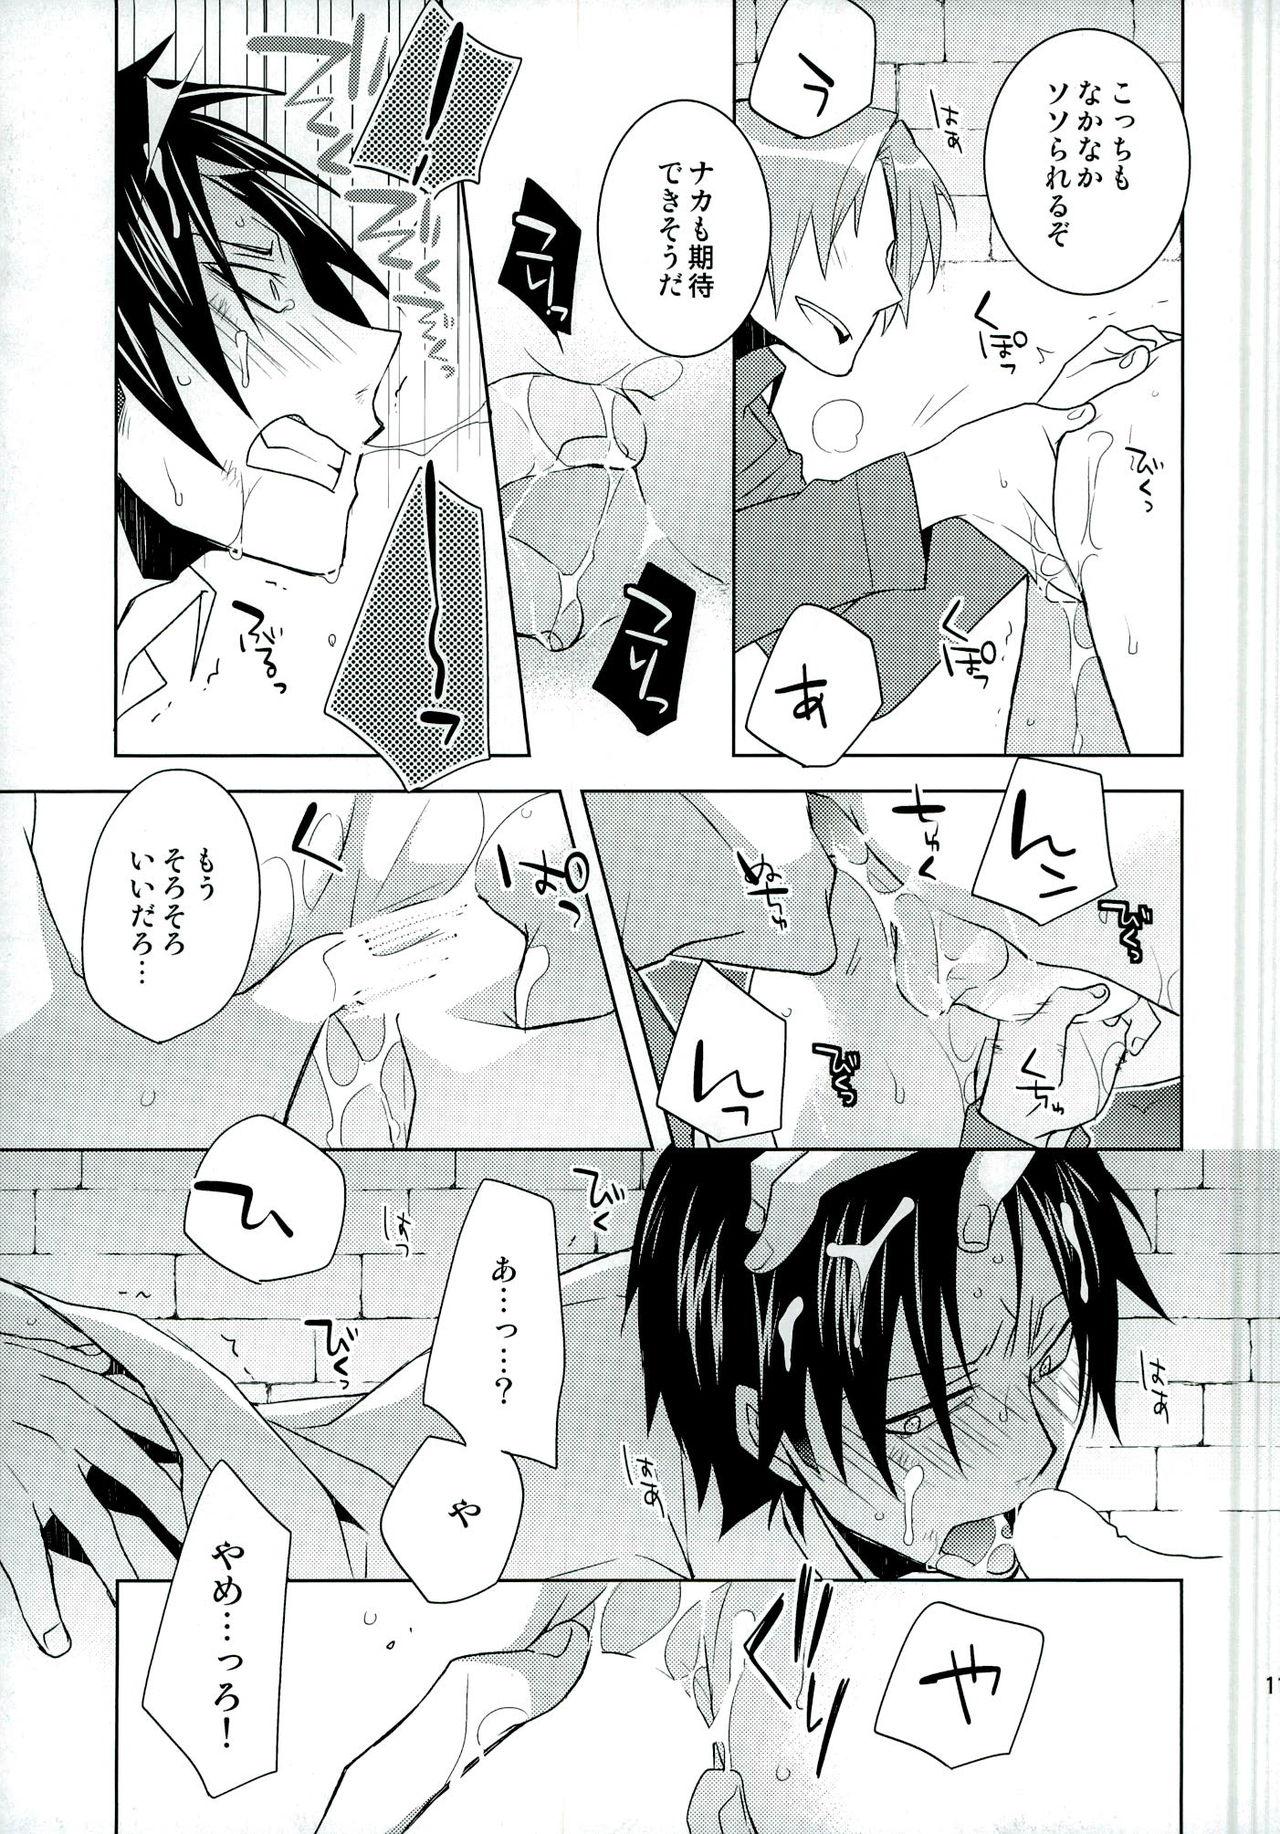 Pee VIRGINAL - Shingeki no kyojin Cdmx - Page 11